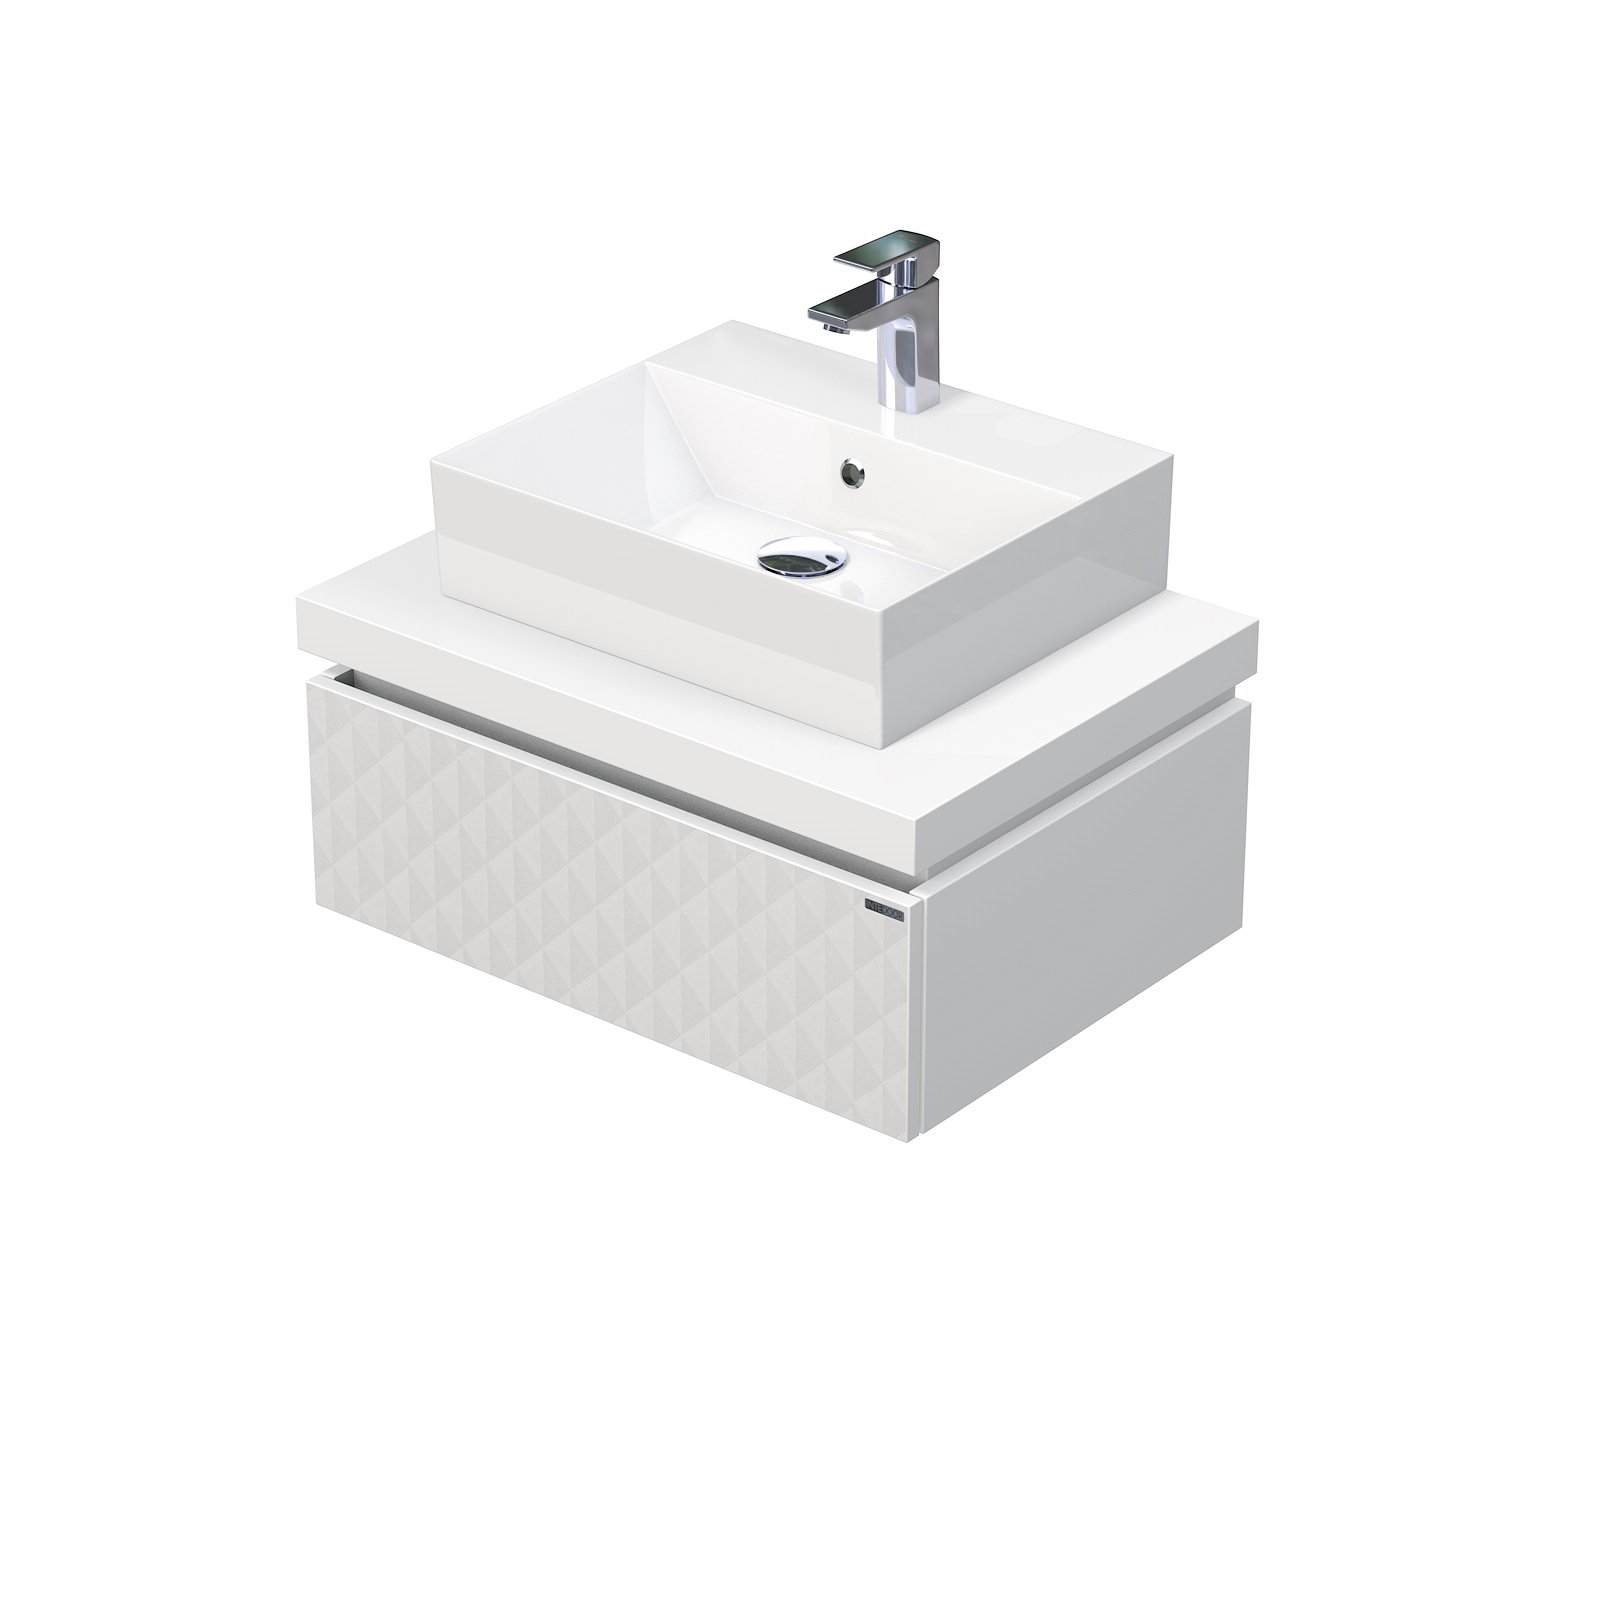 Desk 3D - skříňka 70 cm s umyvadlem na desku, 1 zásuvka, závěsná, bílá DE 54 3D 70 STORM 1Z B073